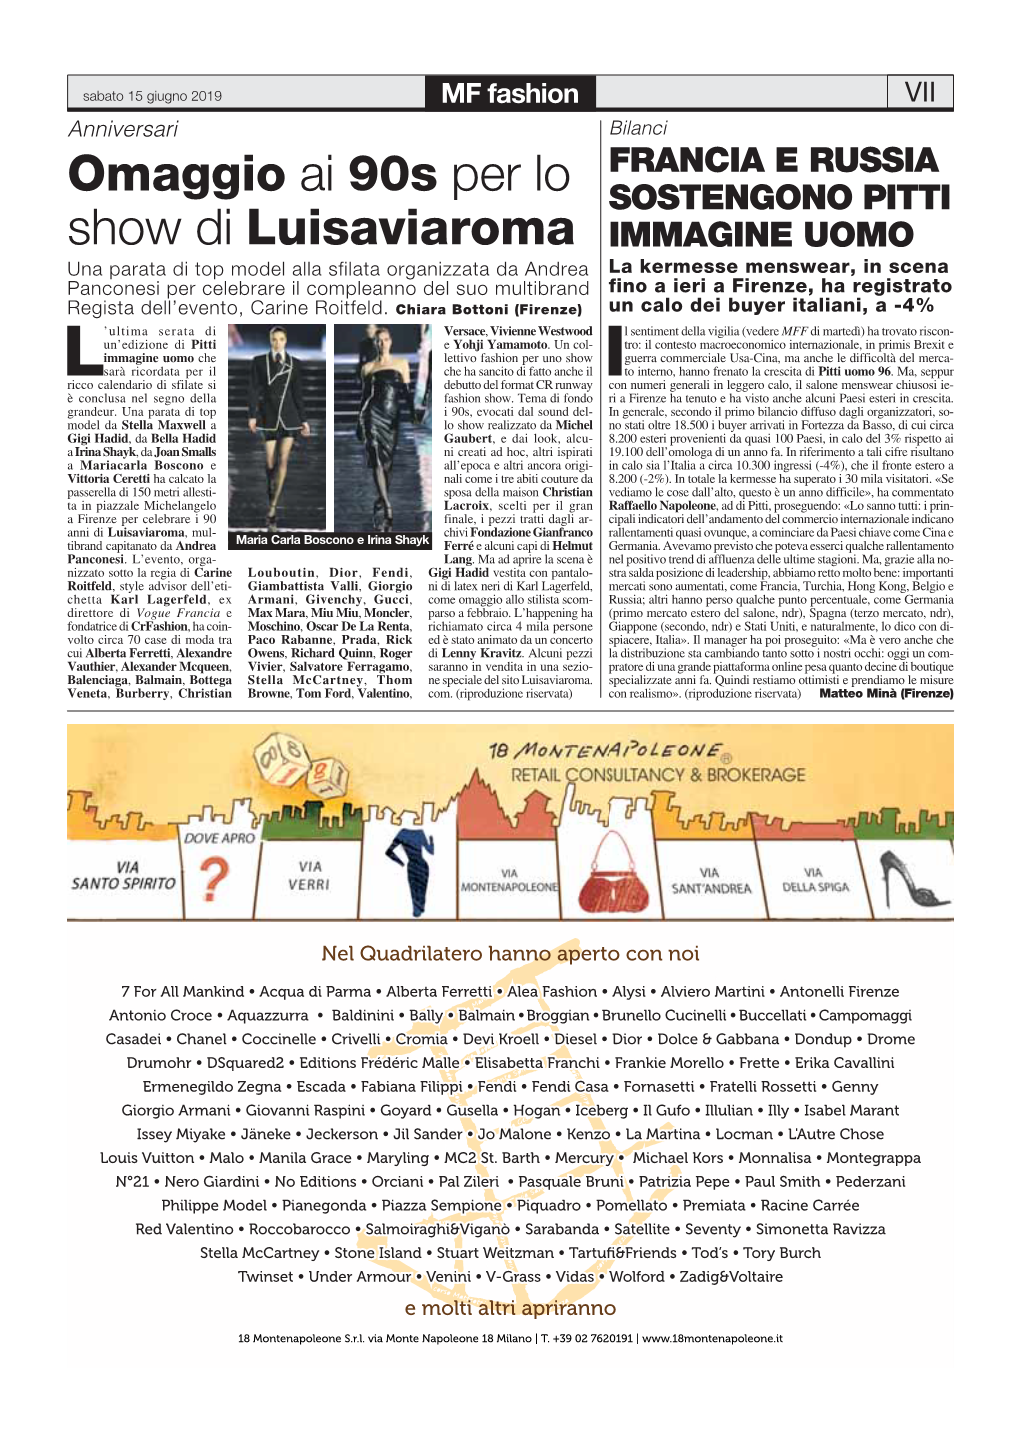 Omaggio Ai 90S Per Lo Show Di Luisaviaroma